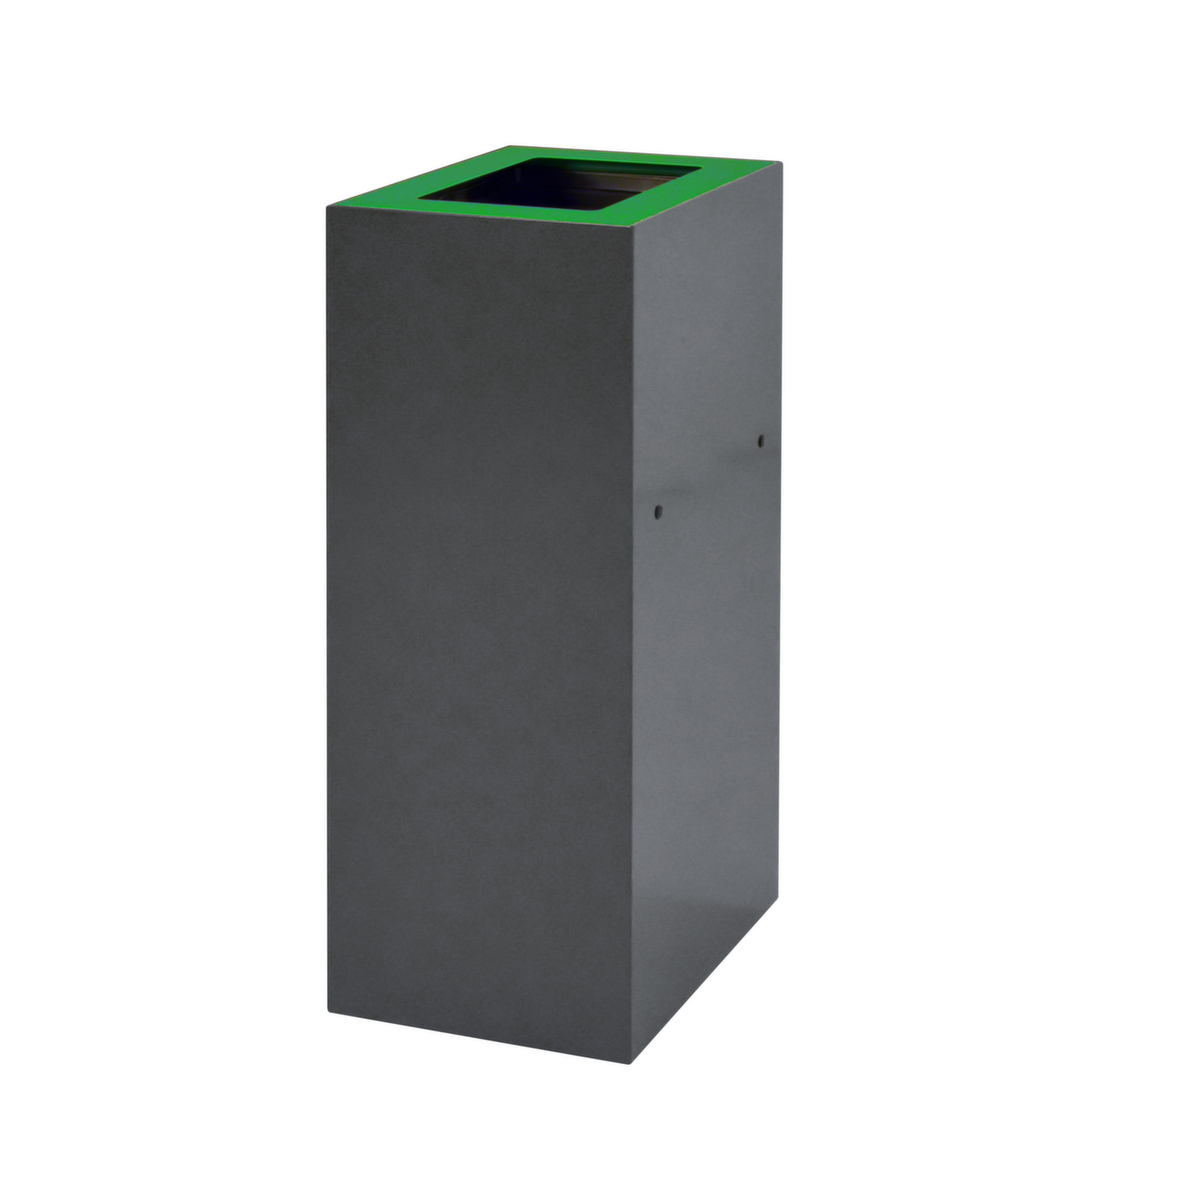 Couverture pour collecteur de recyclage, vert  ZOOM